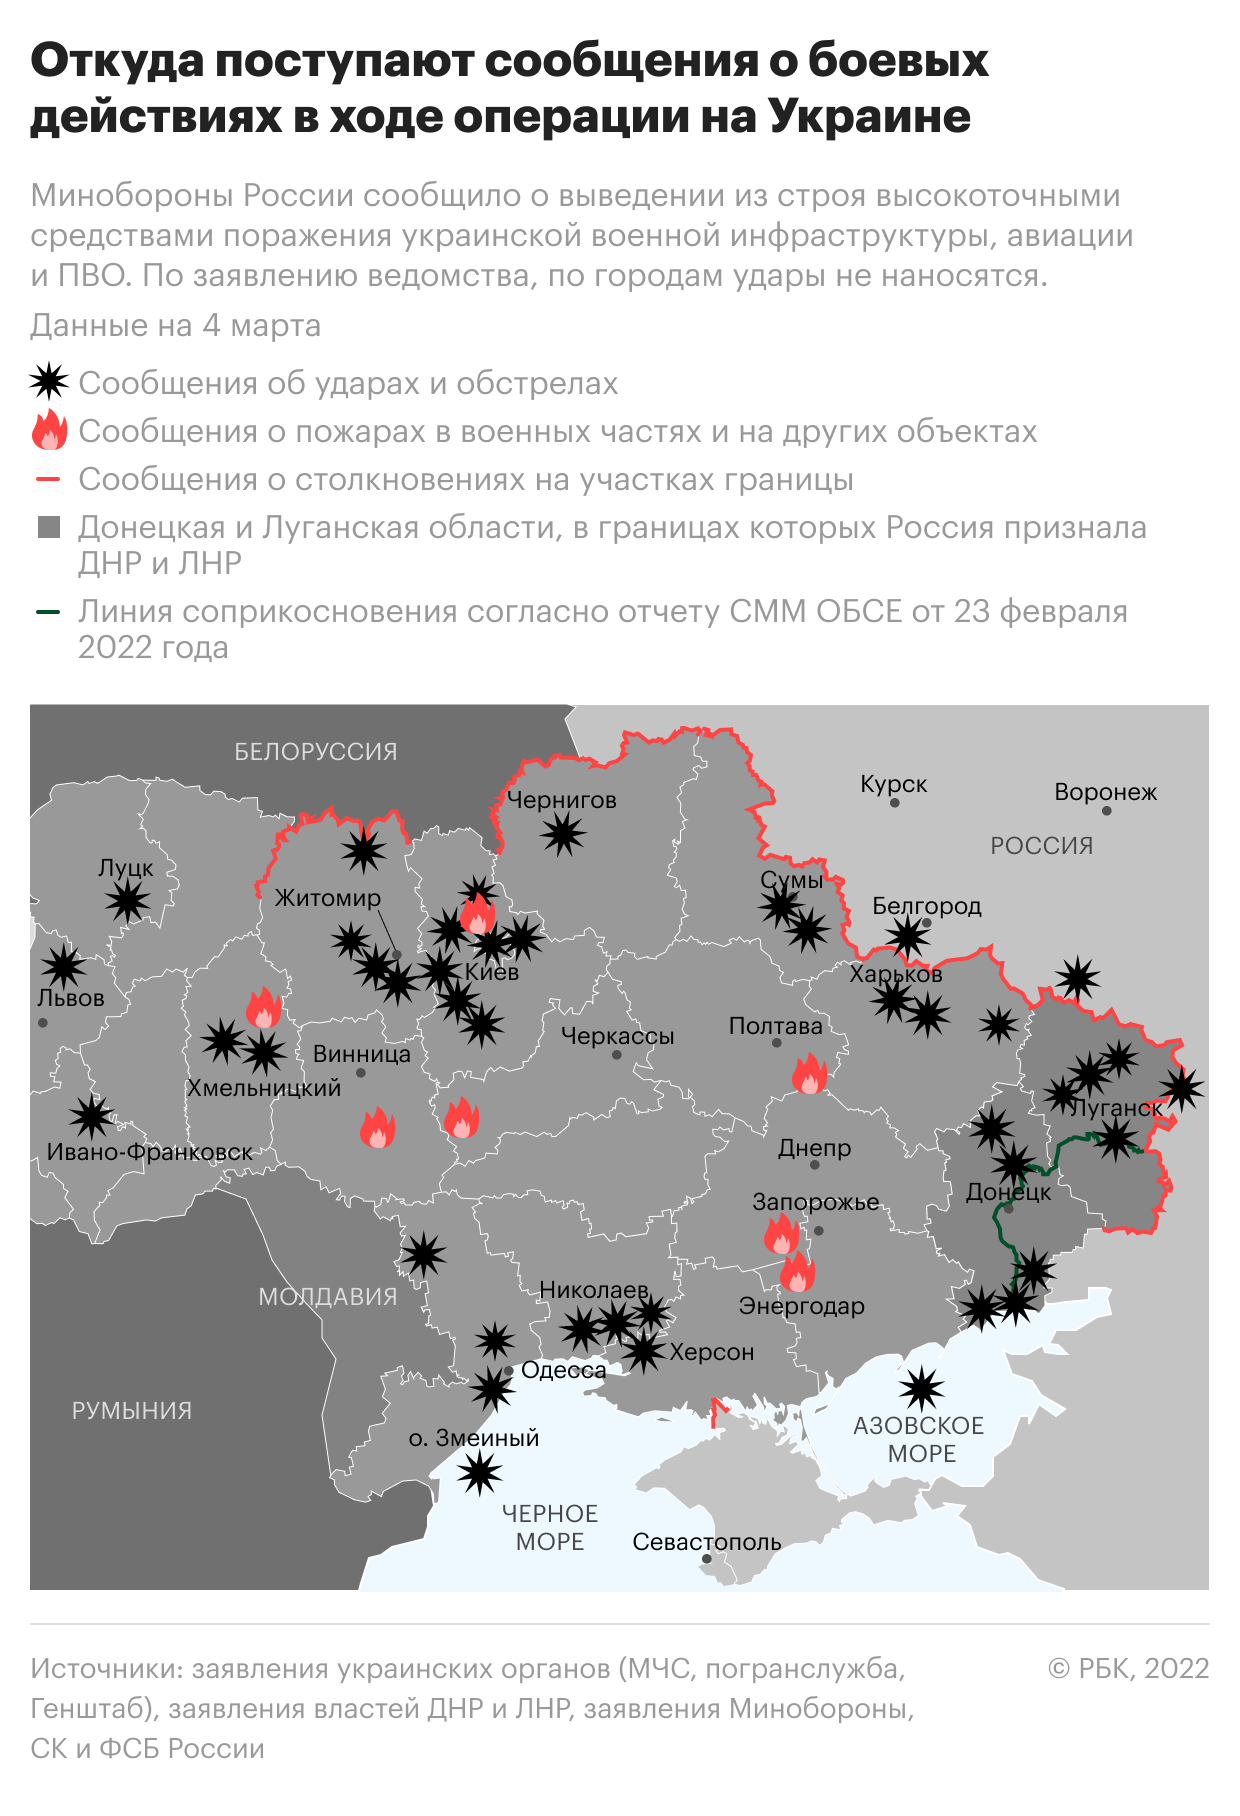 Откуда поступают сообщения о боевых действиях на Украине